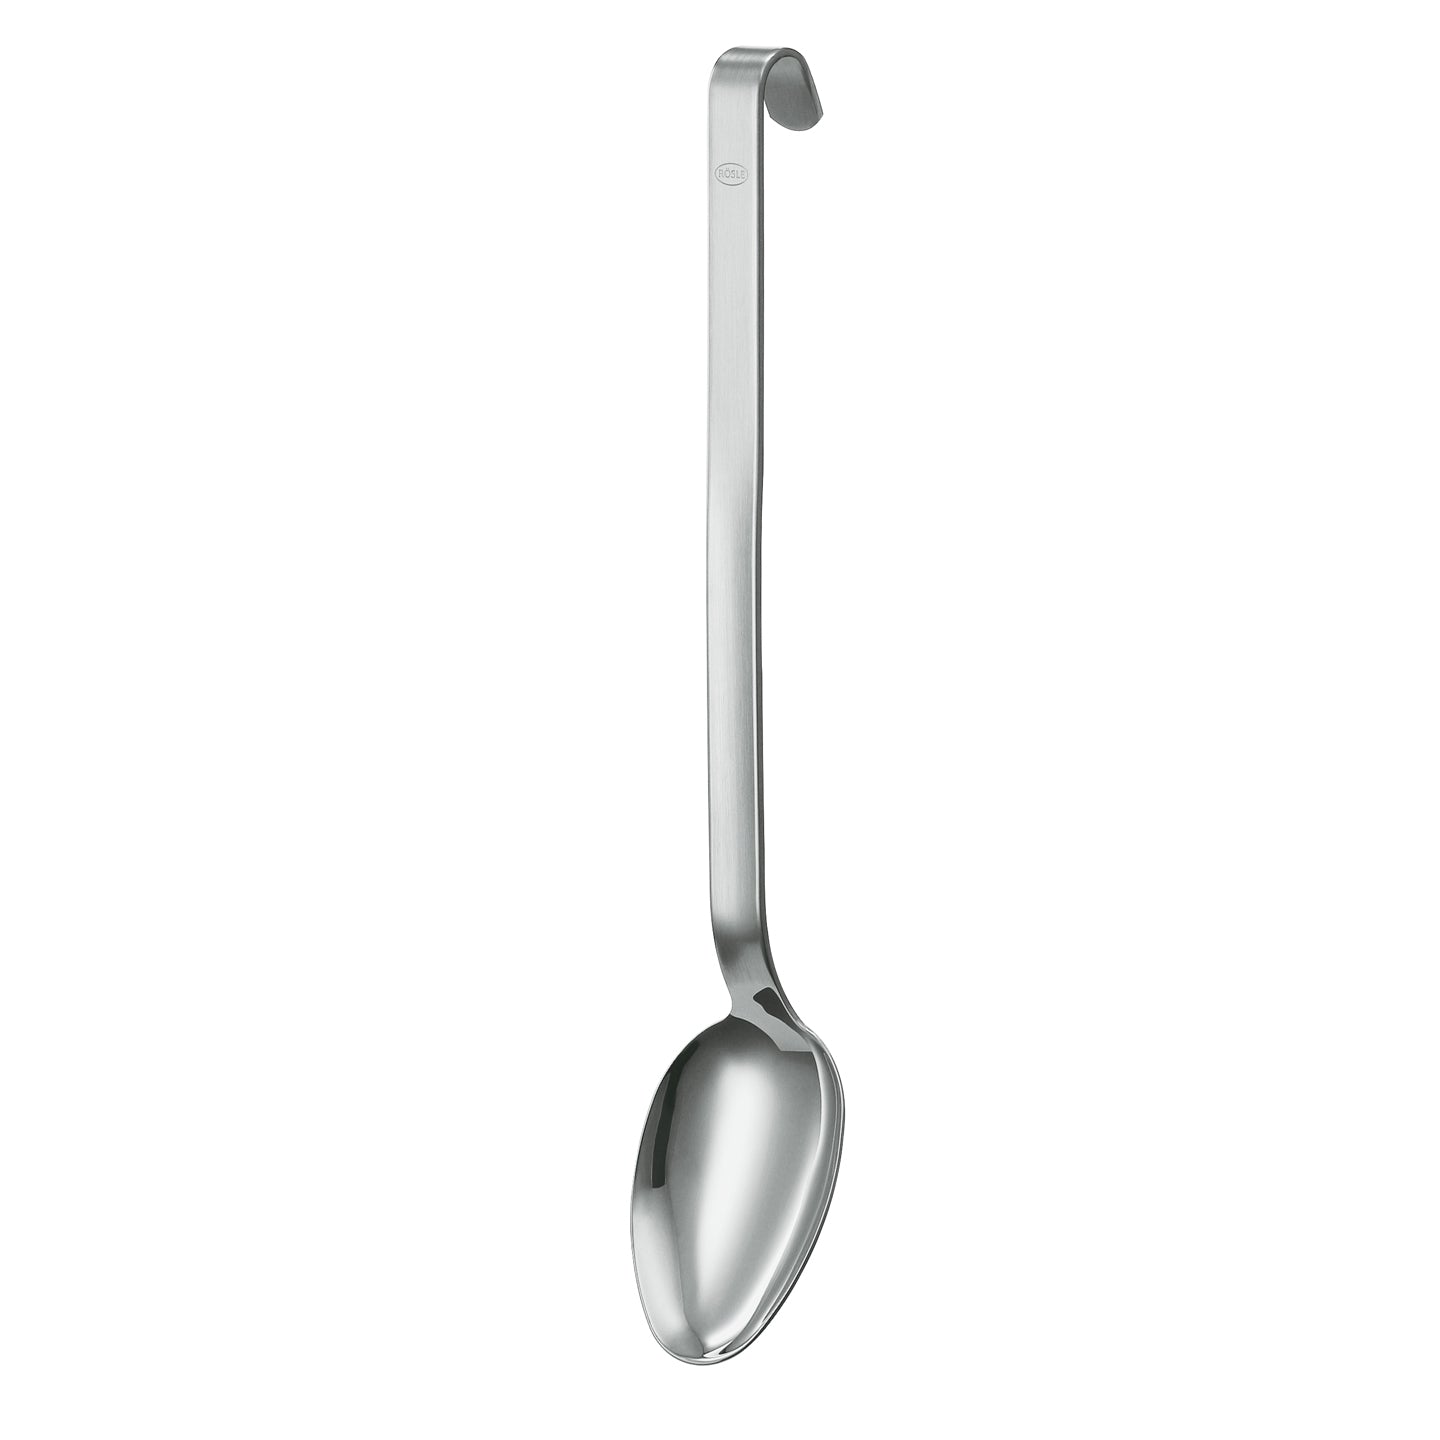 Rosle Hook Basting Spoon